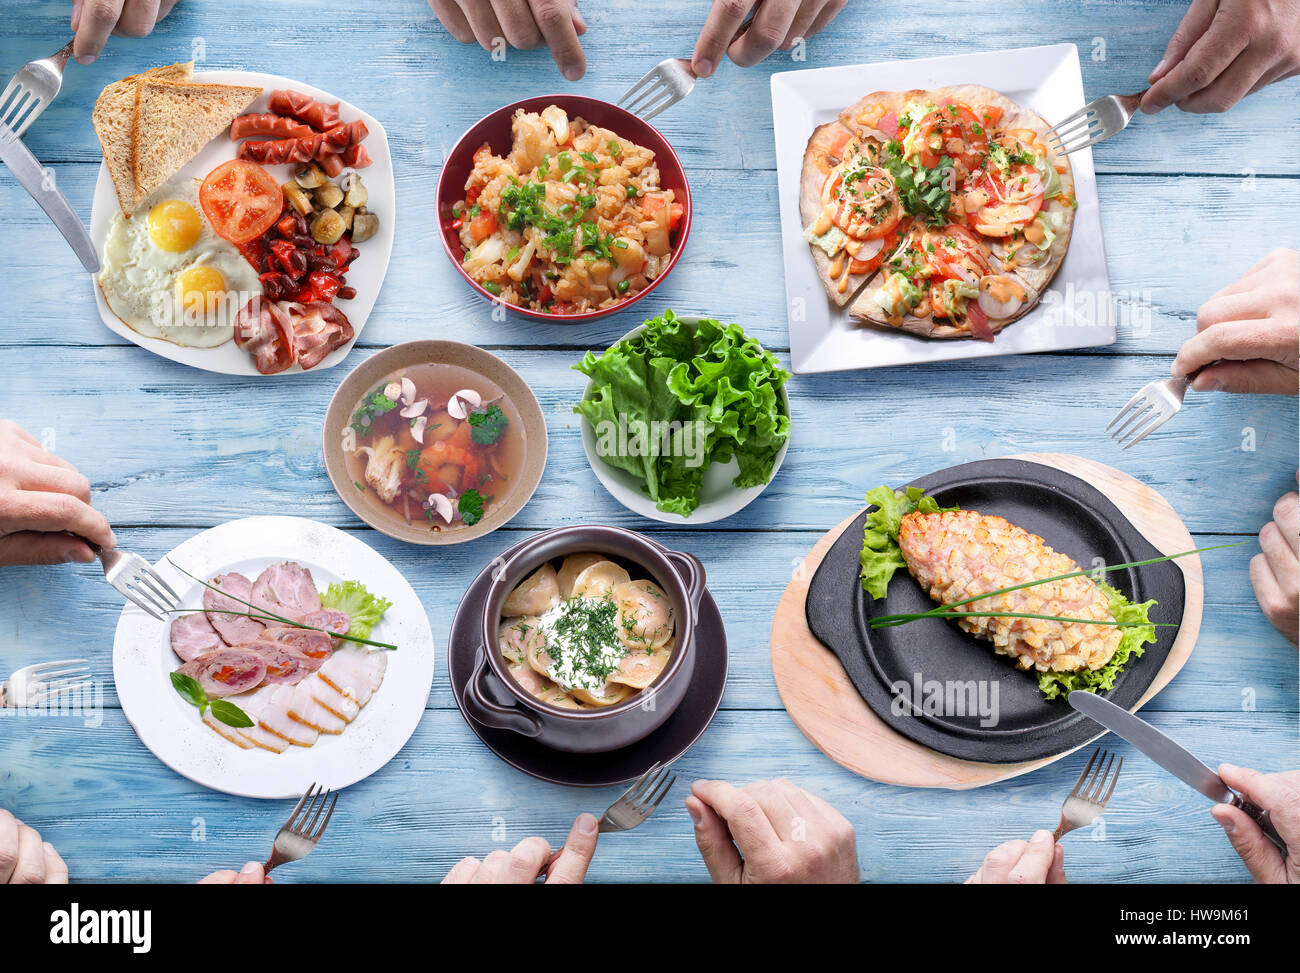 Tabella coperta con diversi pasti e persone le mani. Foto Stock